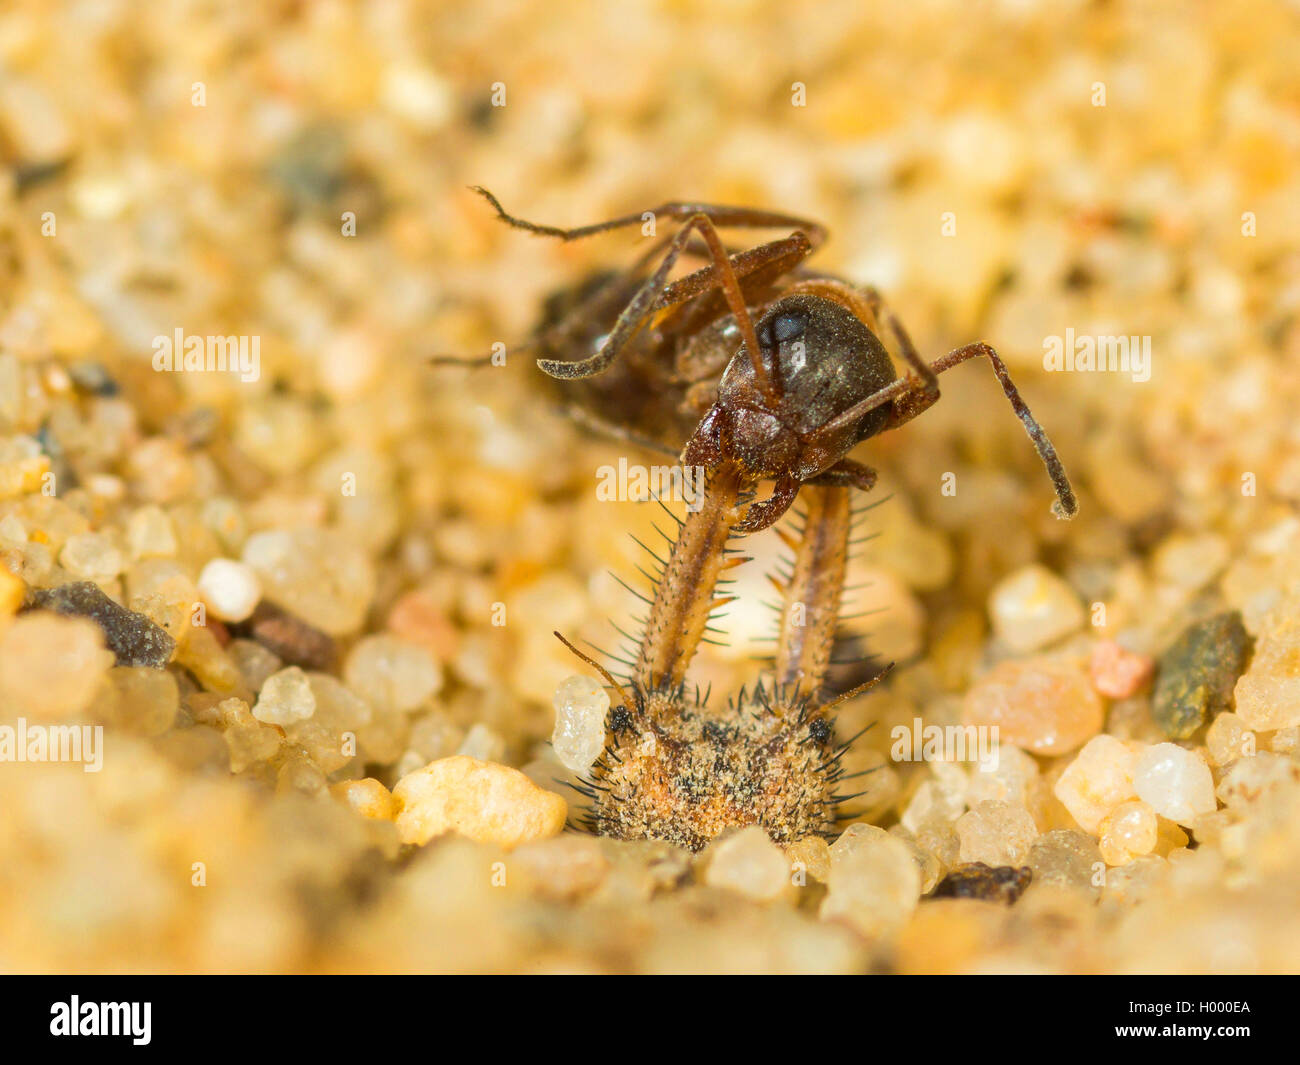 Europäische antlion (Euroleon nostras), ausgereifte Antlion saugt aus einem erfassten Ant (Formica rufibarbis) am Grund des konischen Grube, Deutschland Stockfoto